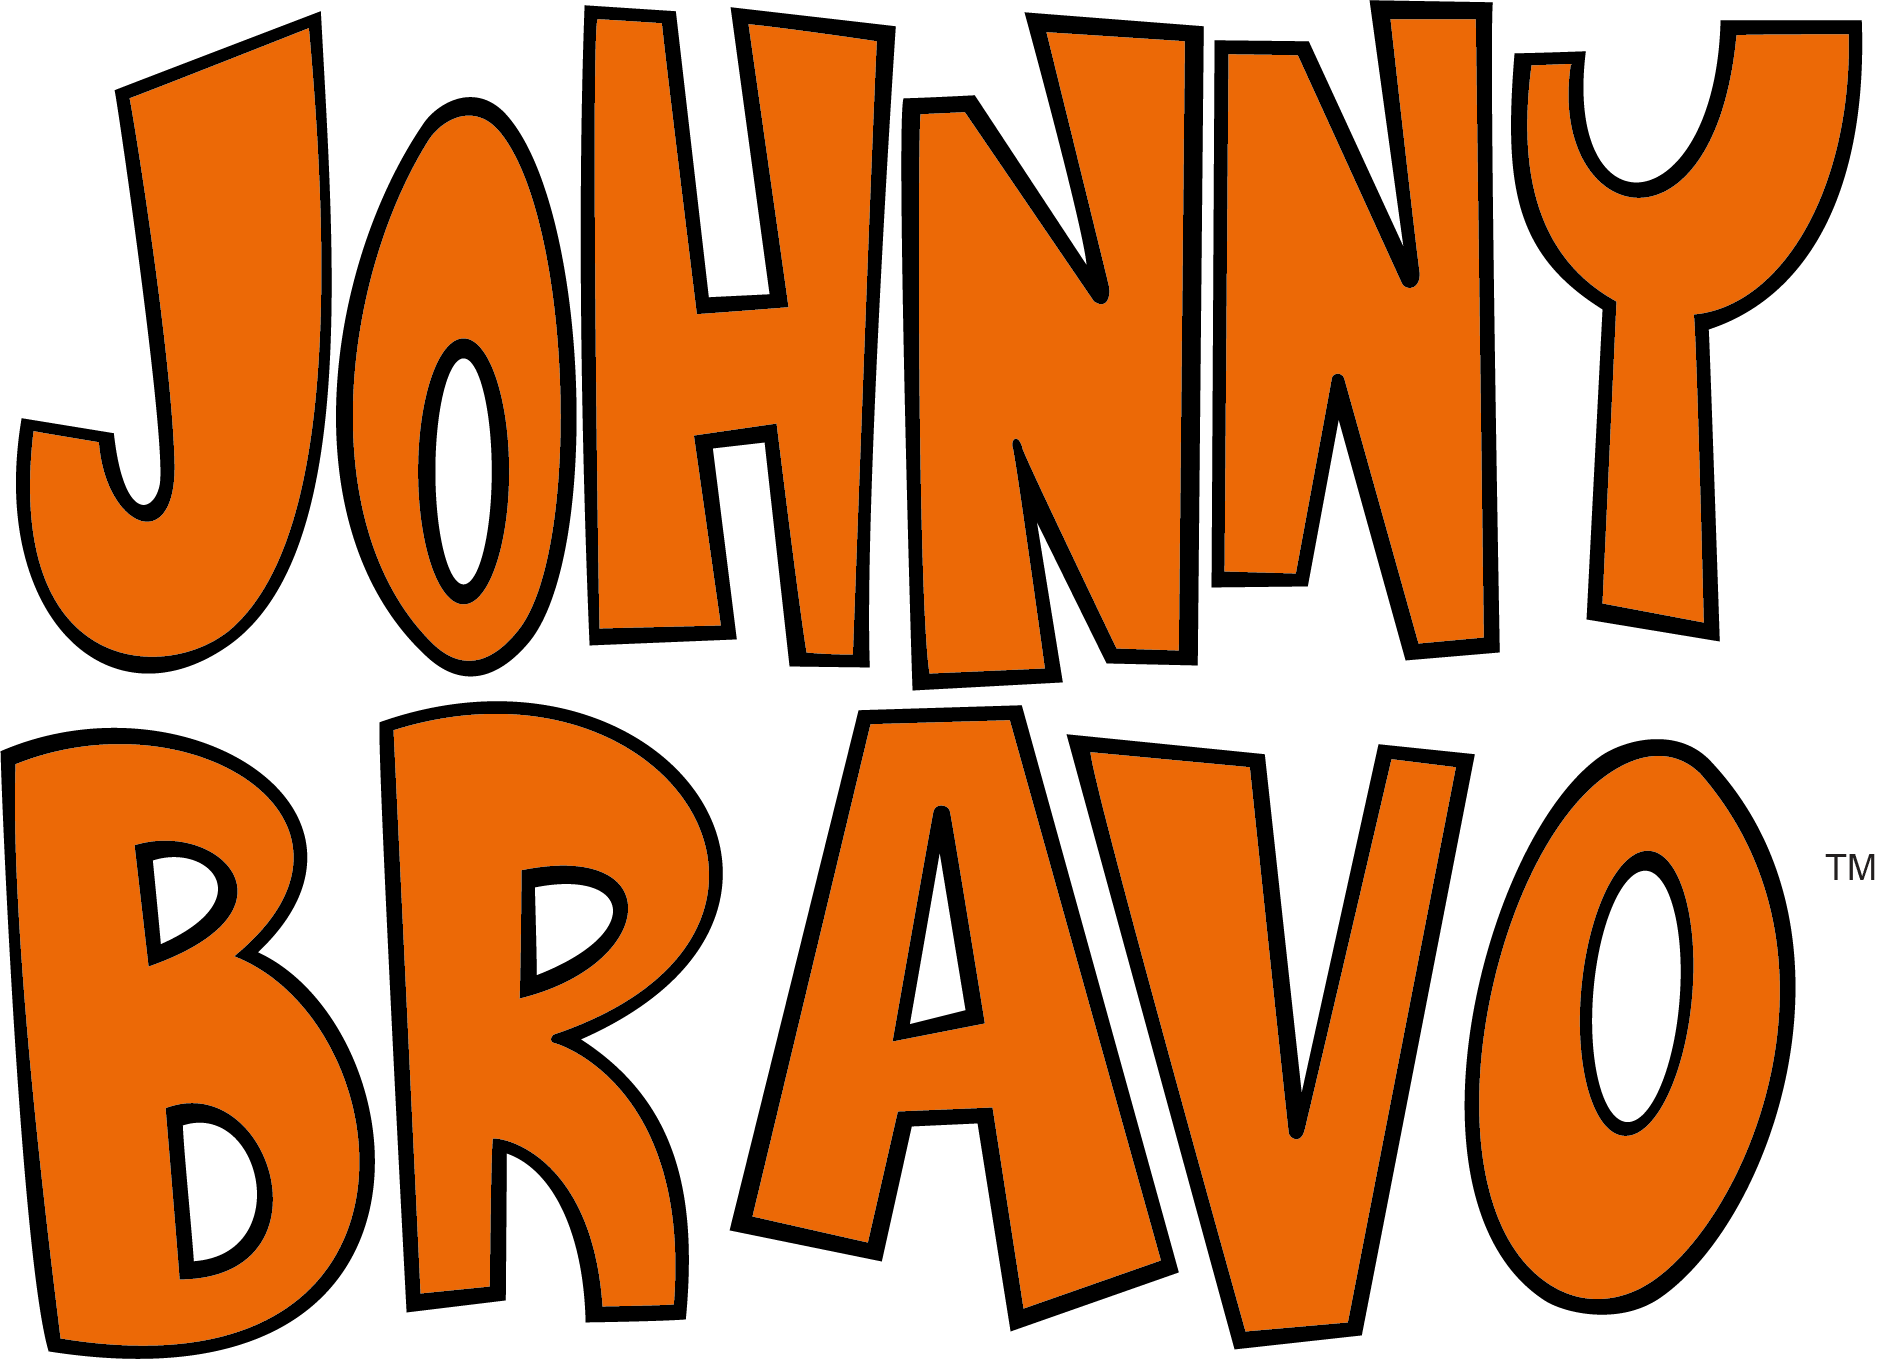 Johnny Bravo Logo